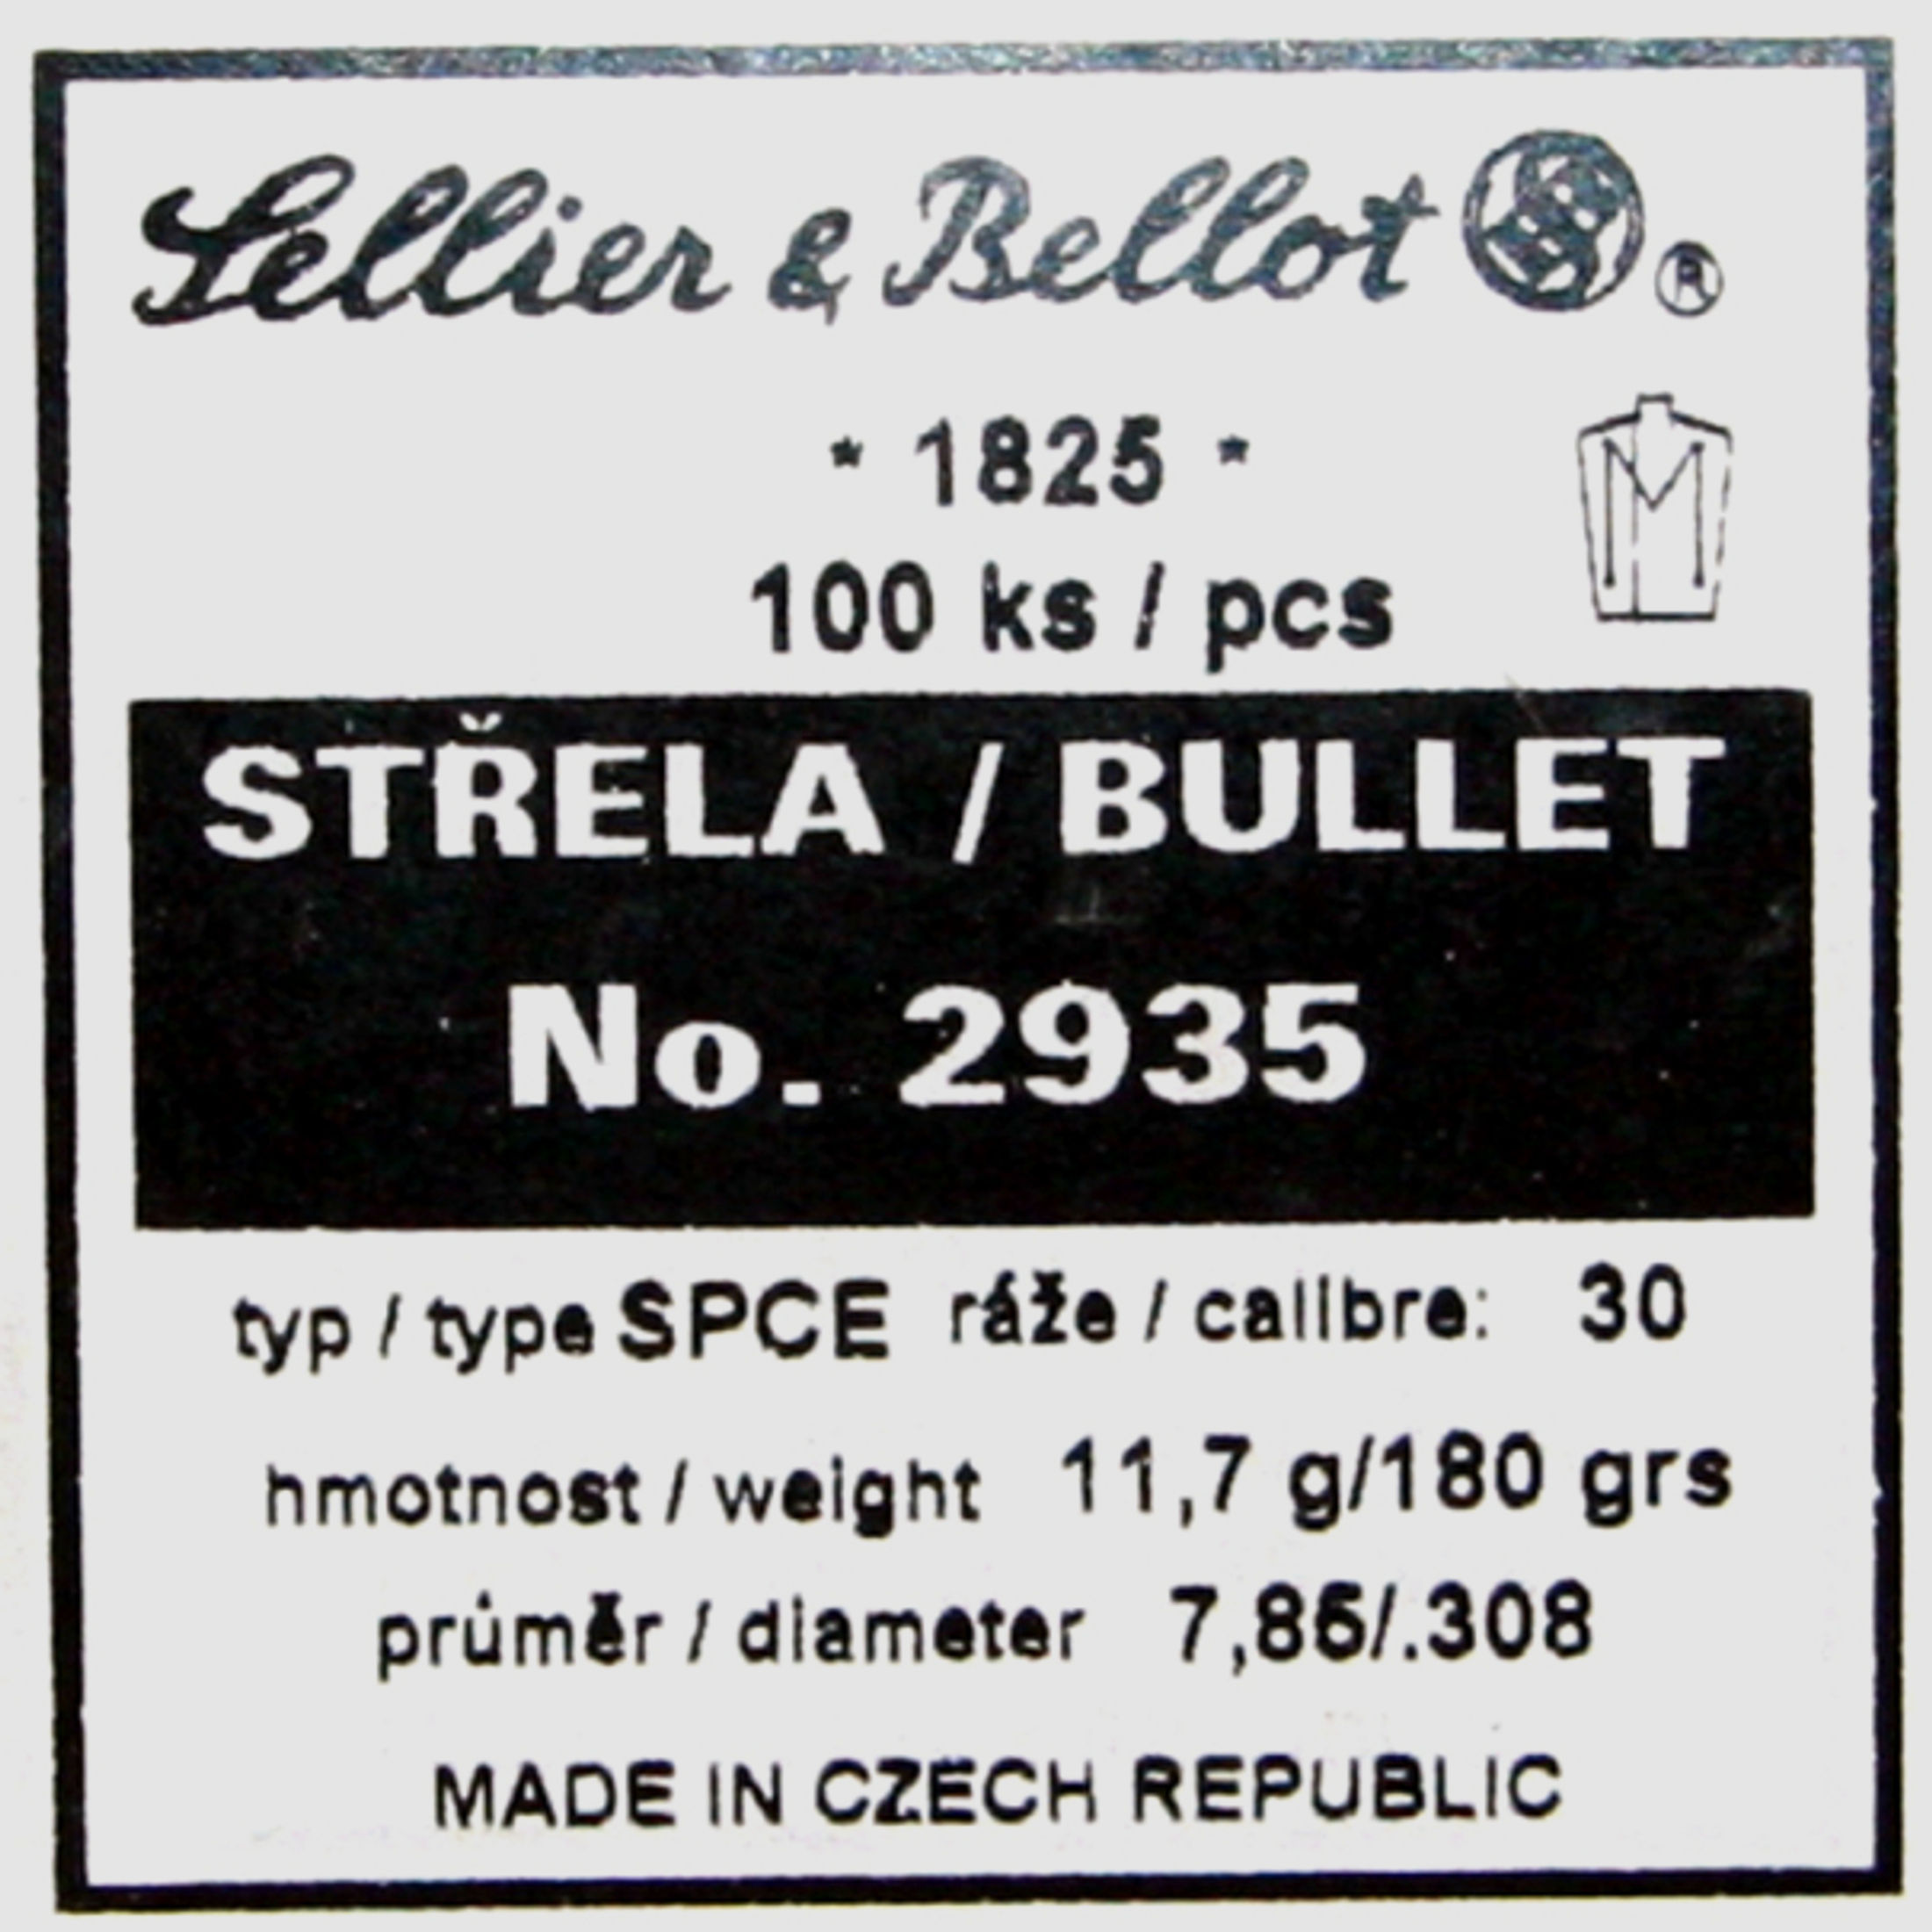 100 Stück S&B | Sellier&Bellot Geschosse #2935 | .308 / 7,62mm - 180grs / 11,7g SPCE mit Scharfrand